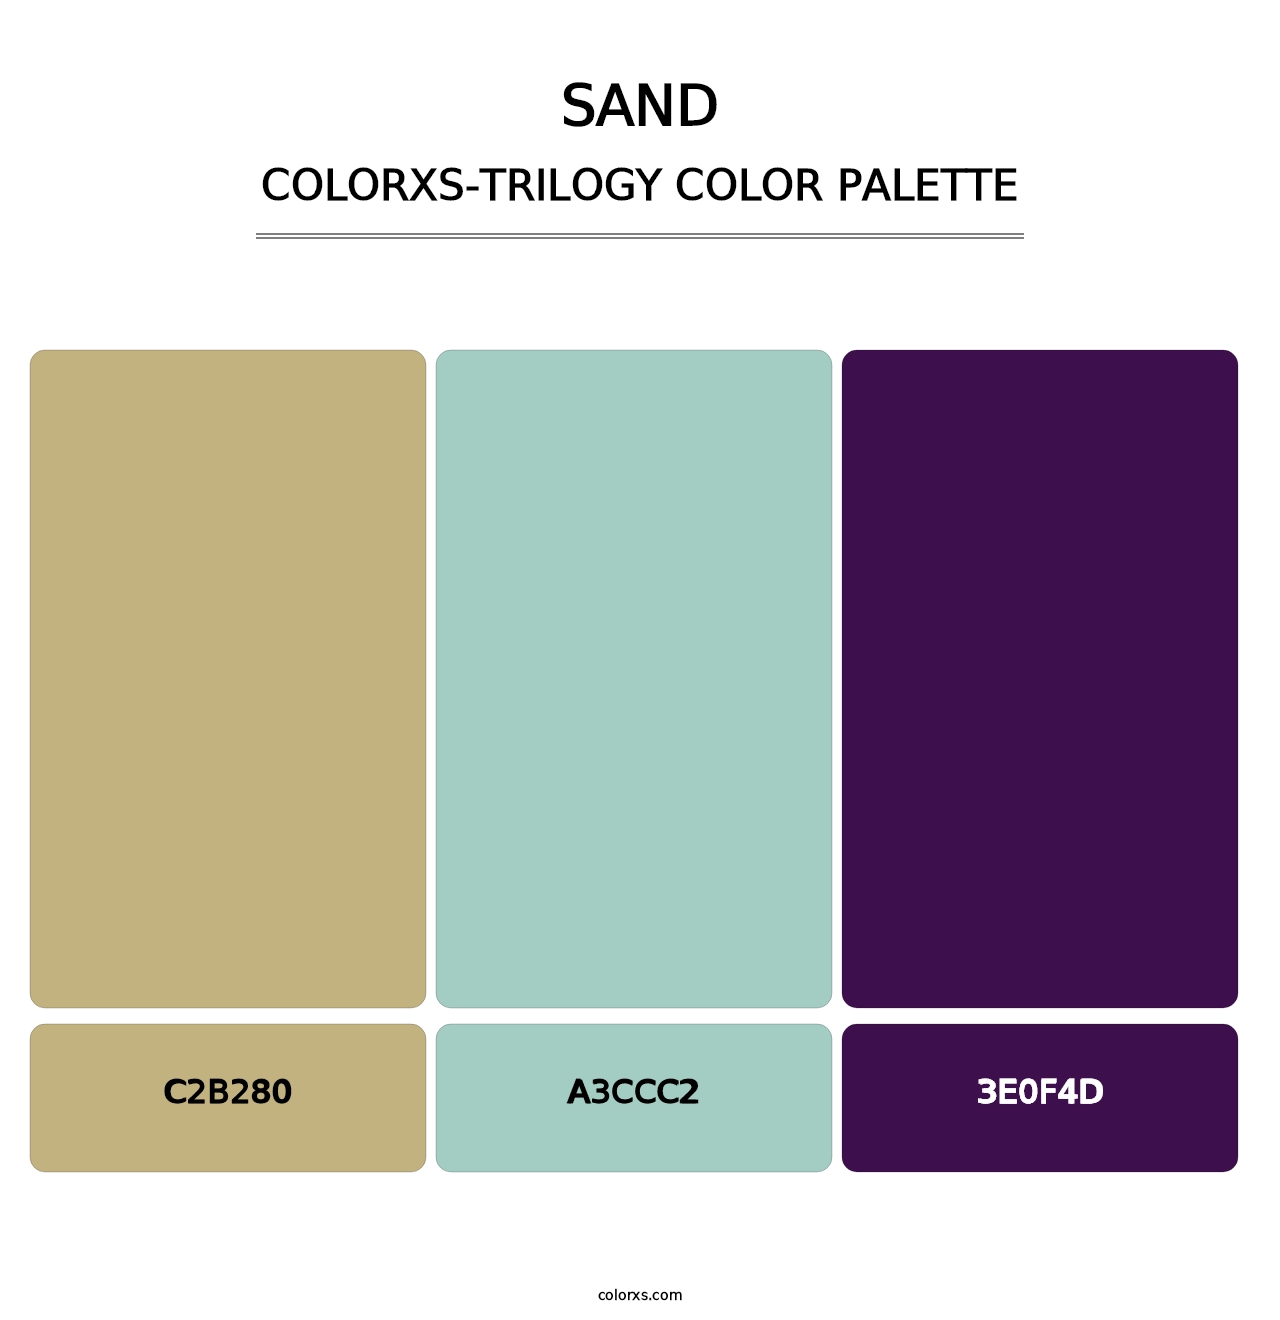 Sand - Colorxs Trilogy Palette